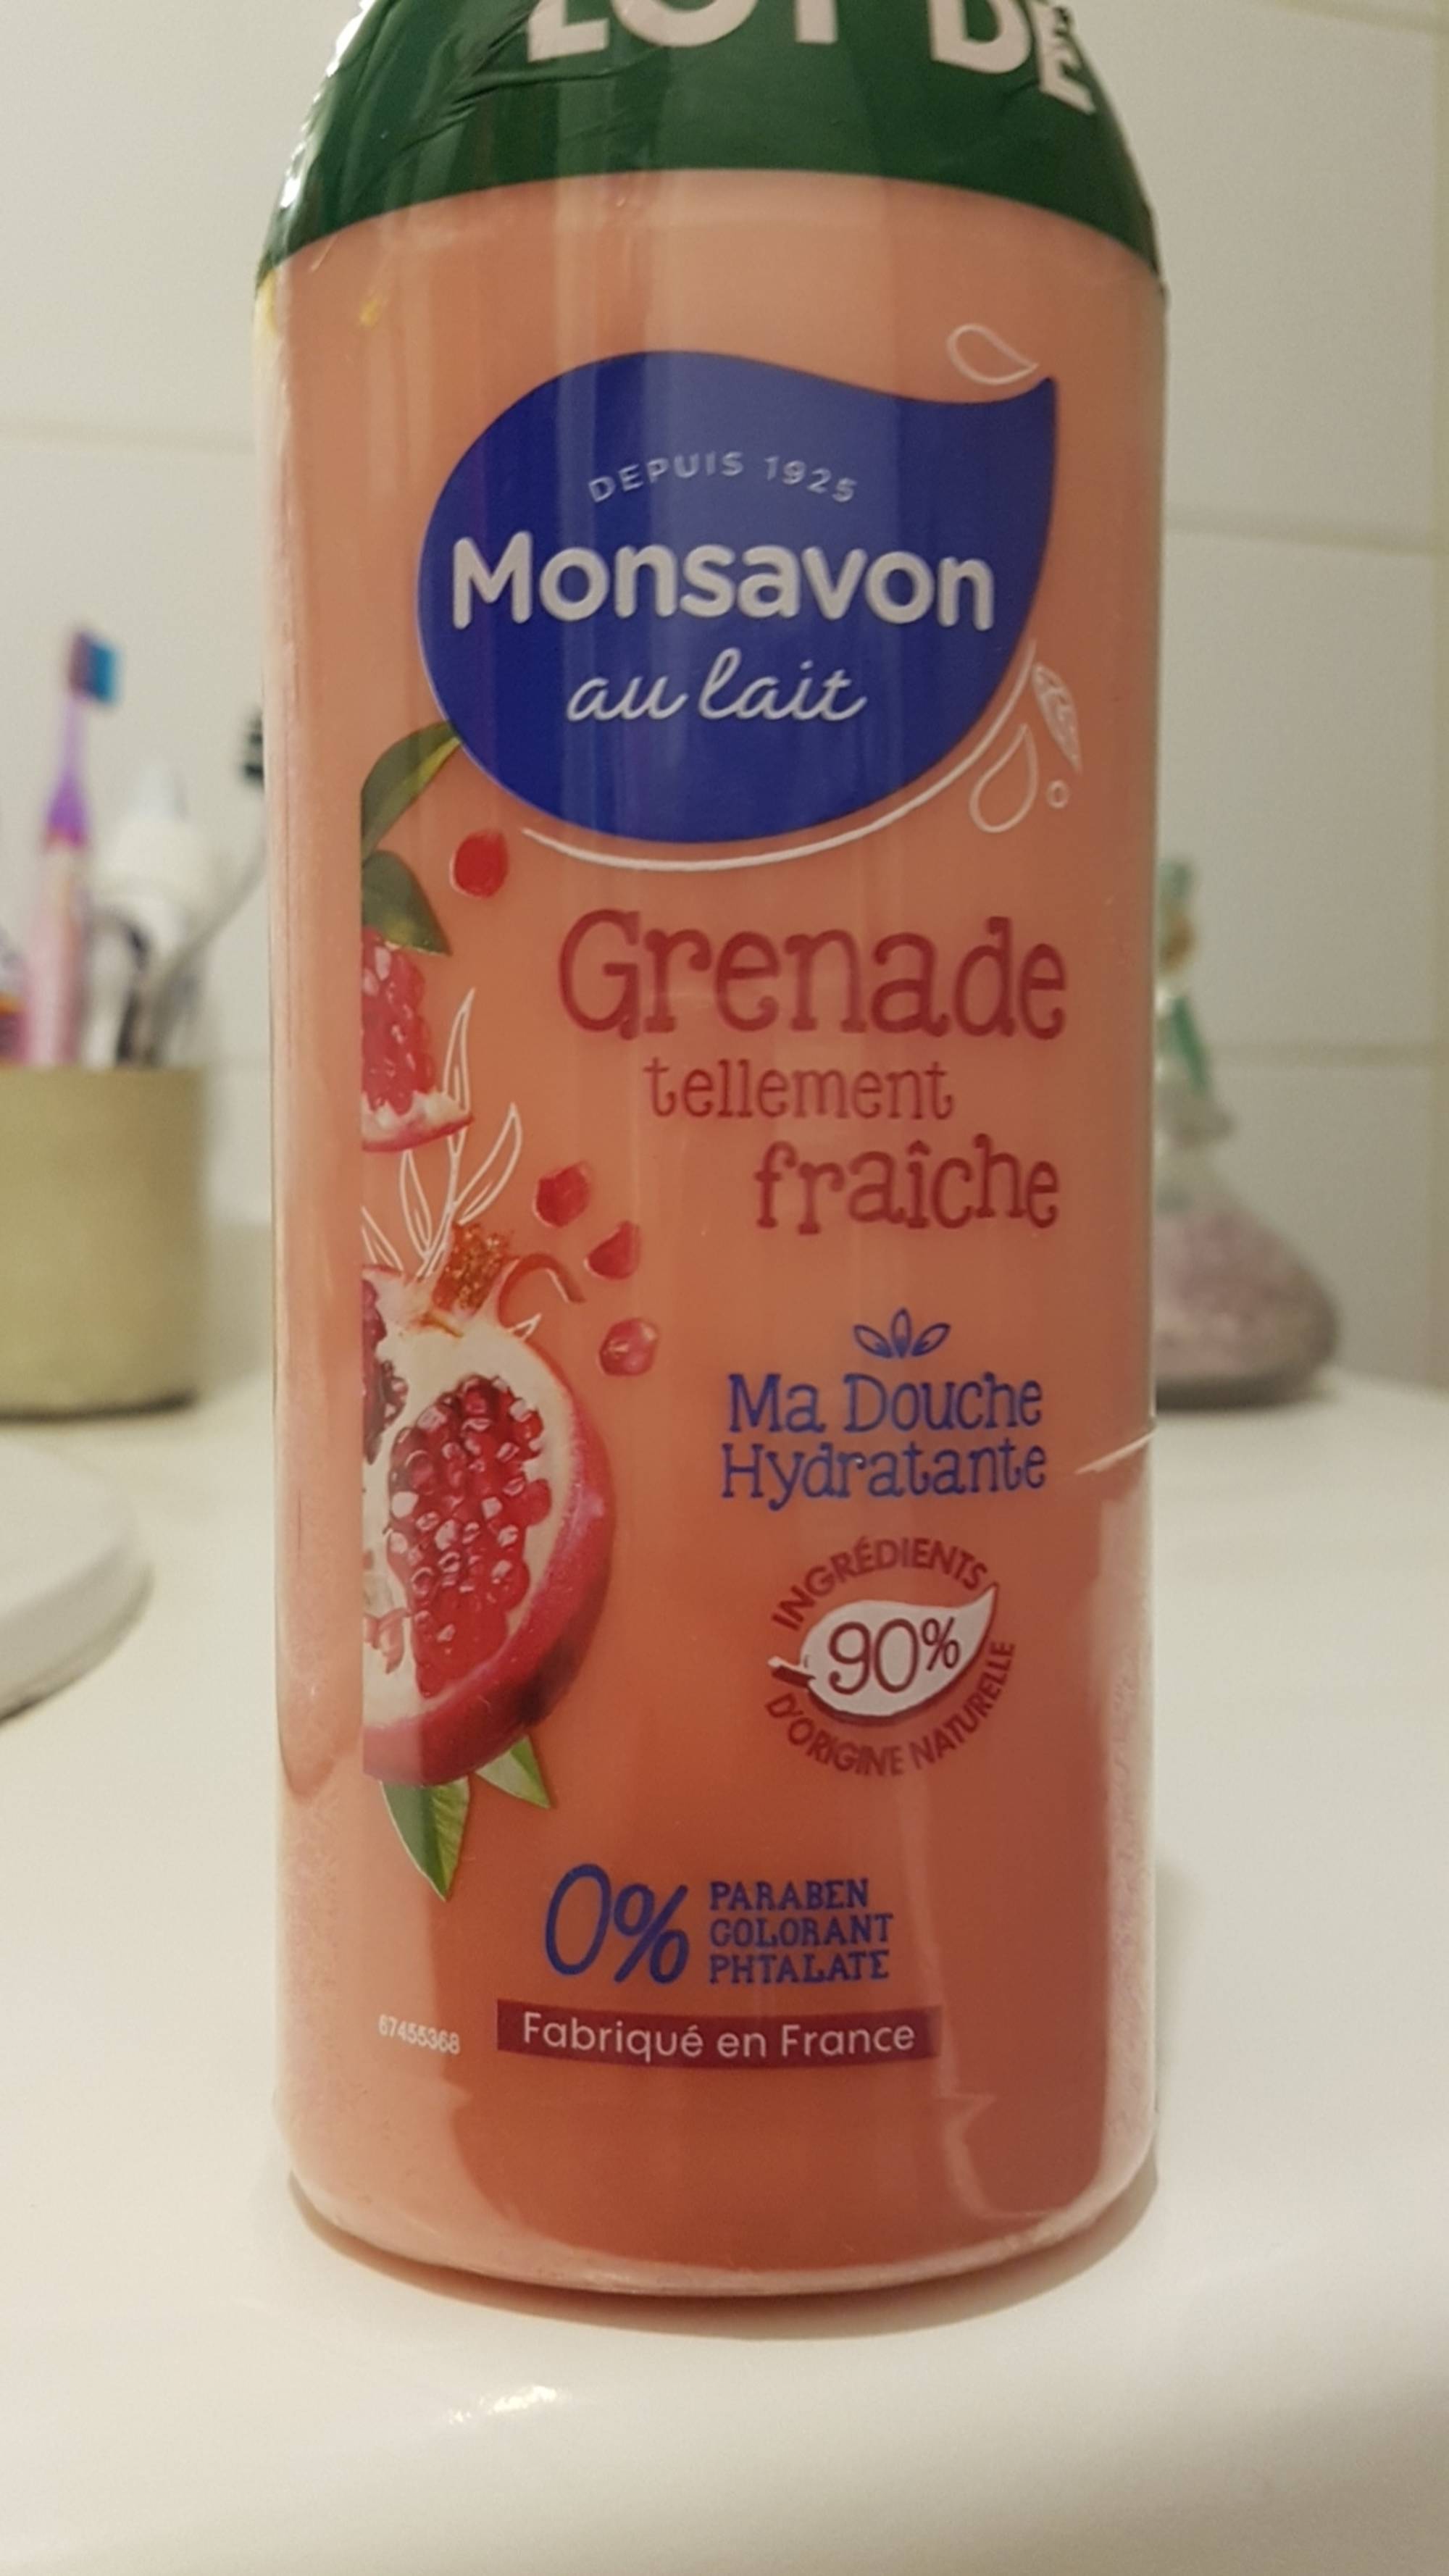 MONSAVON - Grenade fraîche - Ma douche hydratante